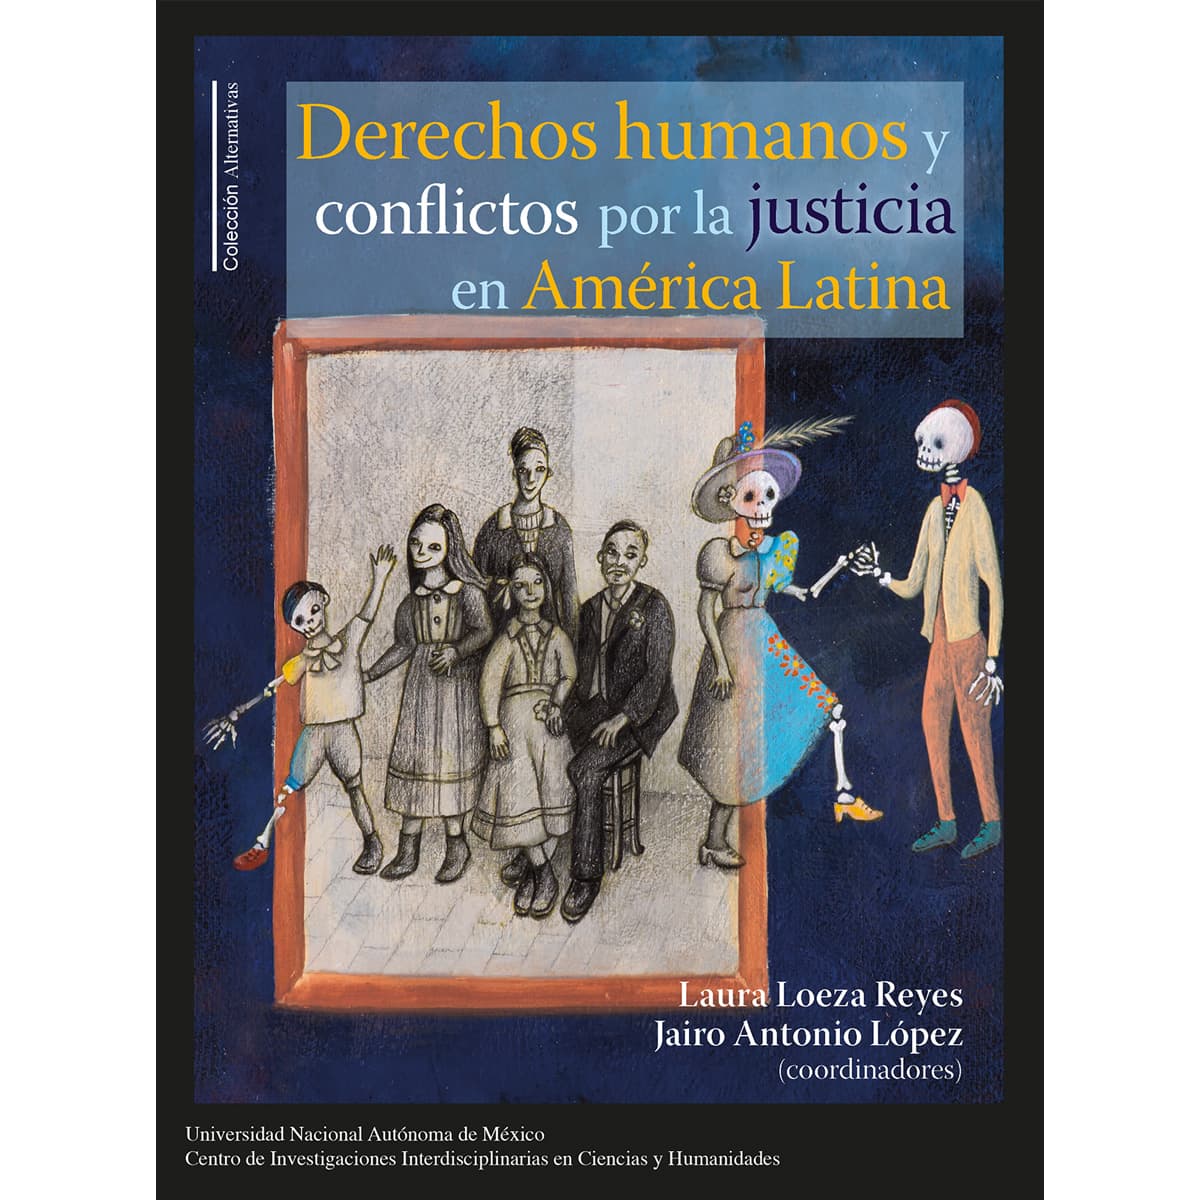 DERECHOS HUMANOS Y CONFLICTOS POR LA JUSTICIA EN AMÉRICA LATINA